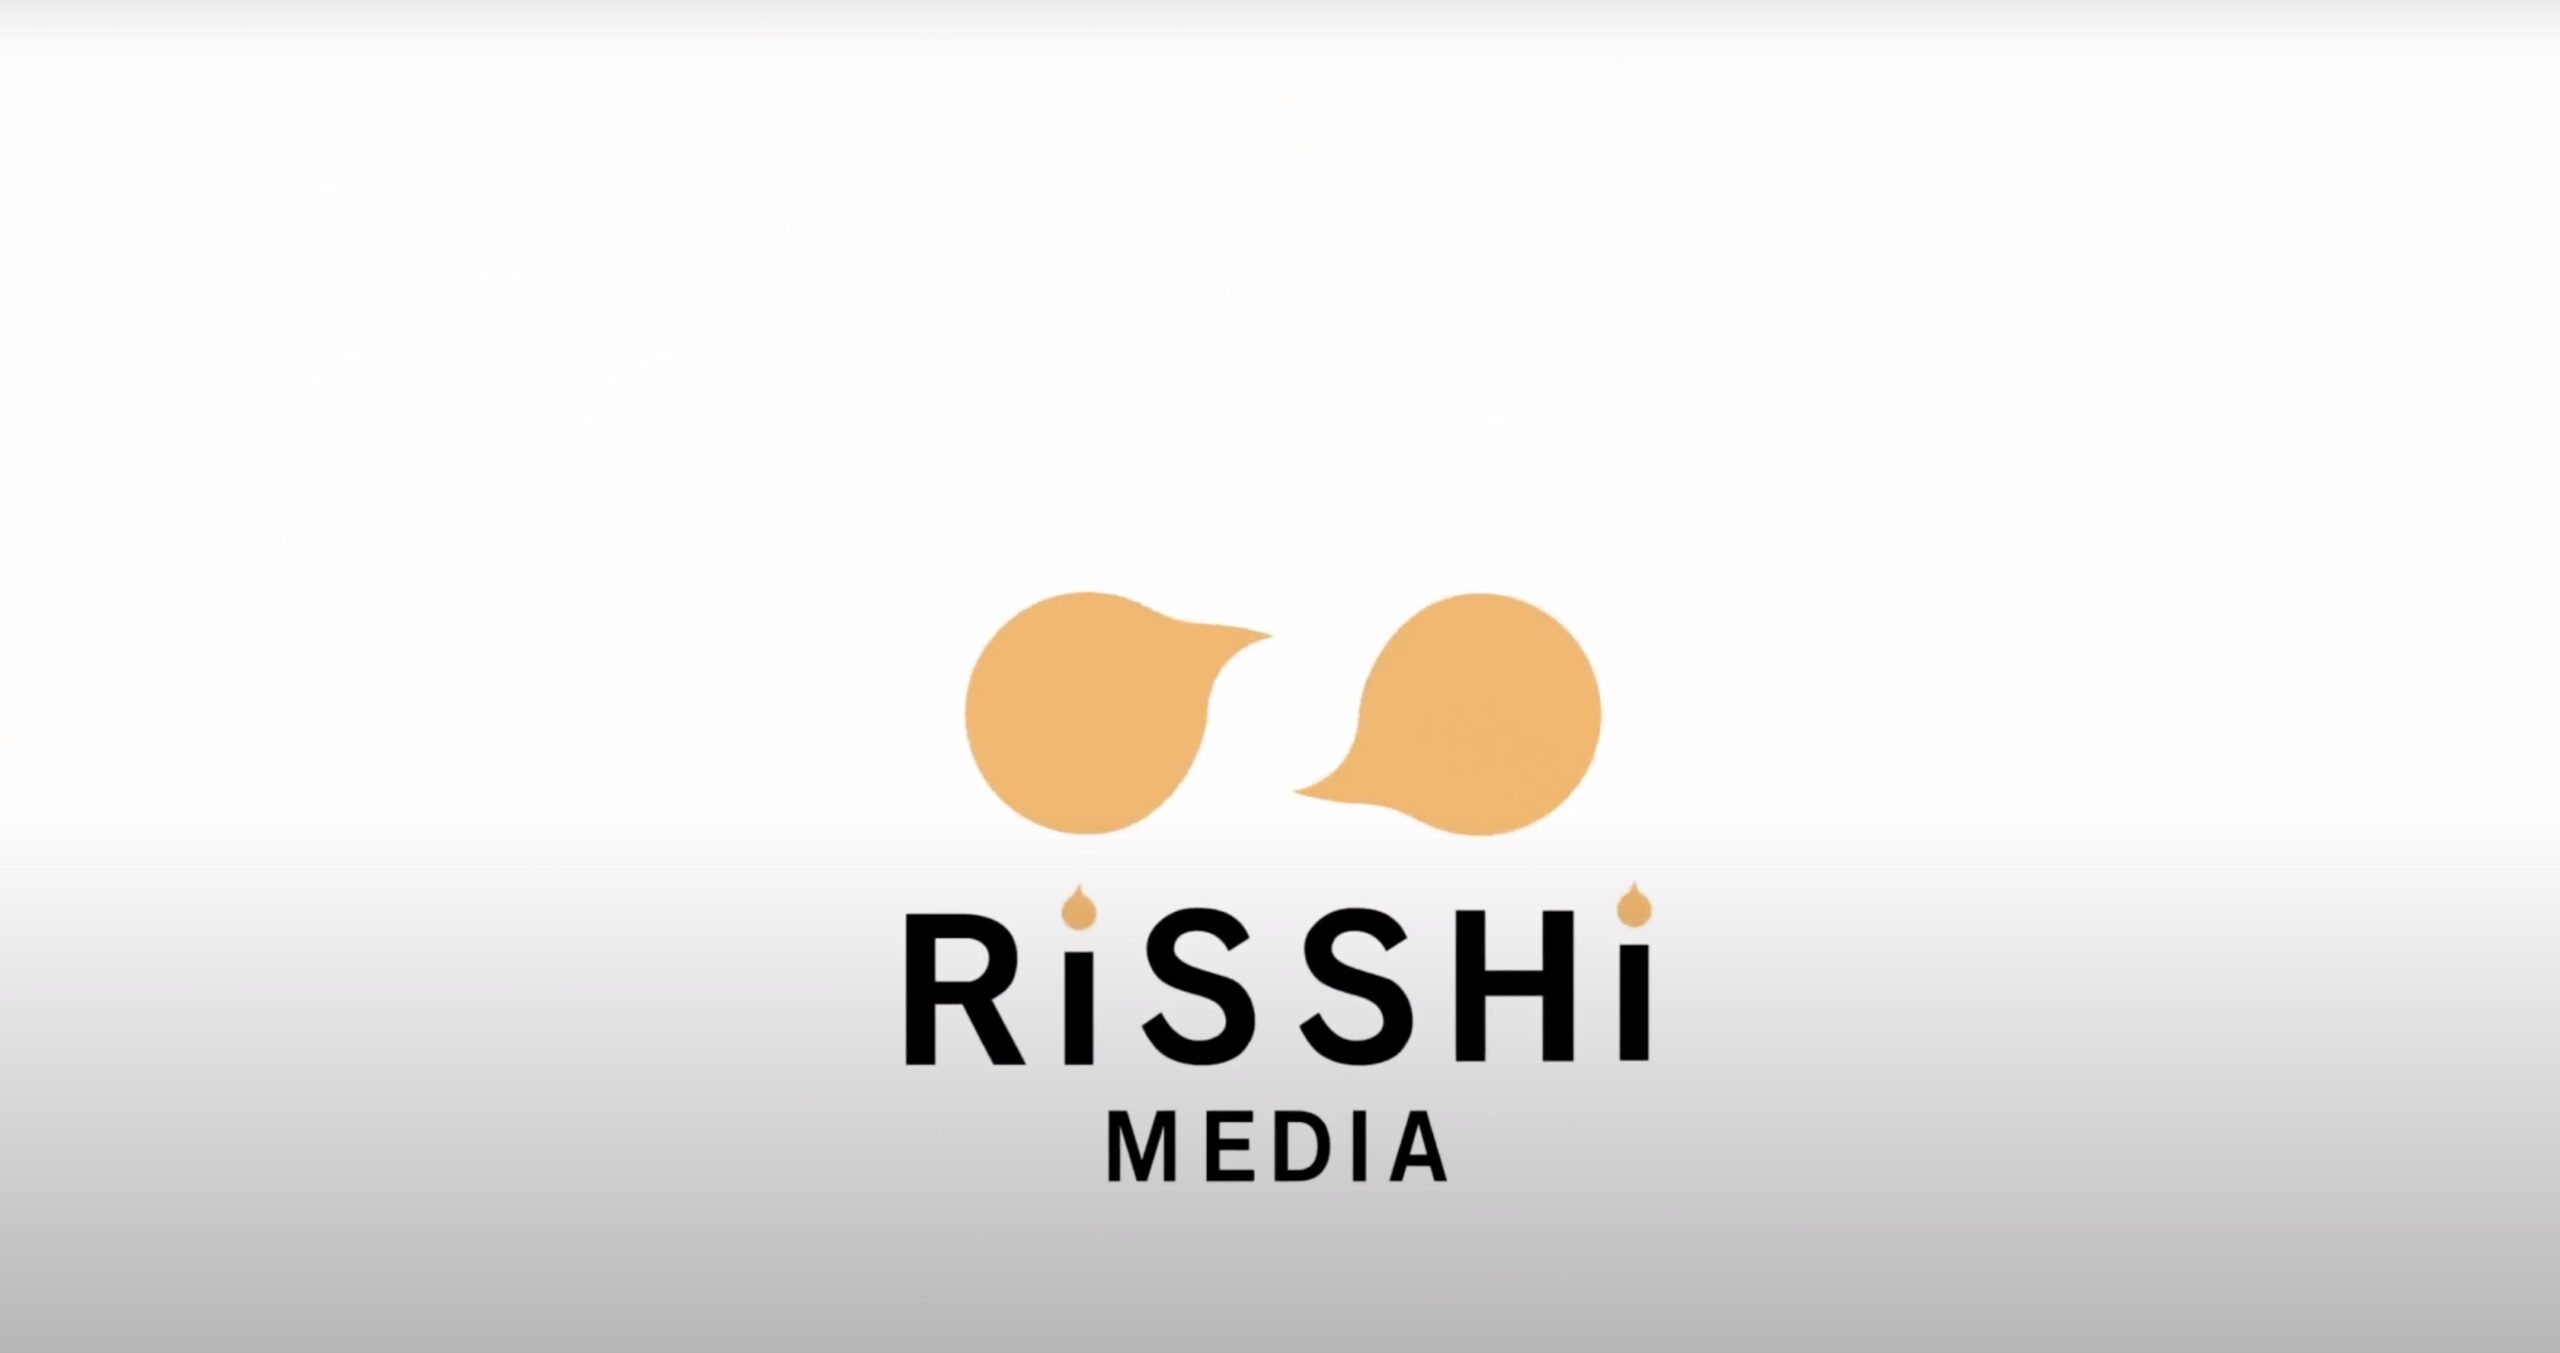 RiiSHi Media